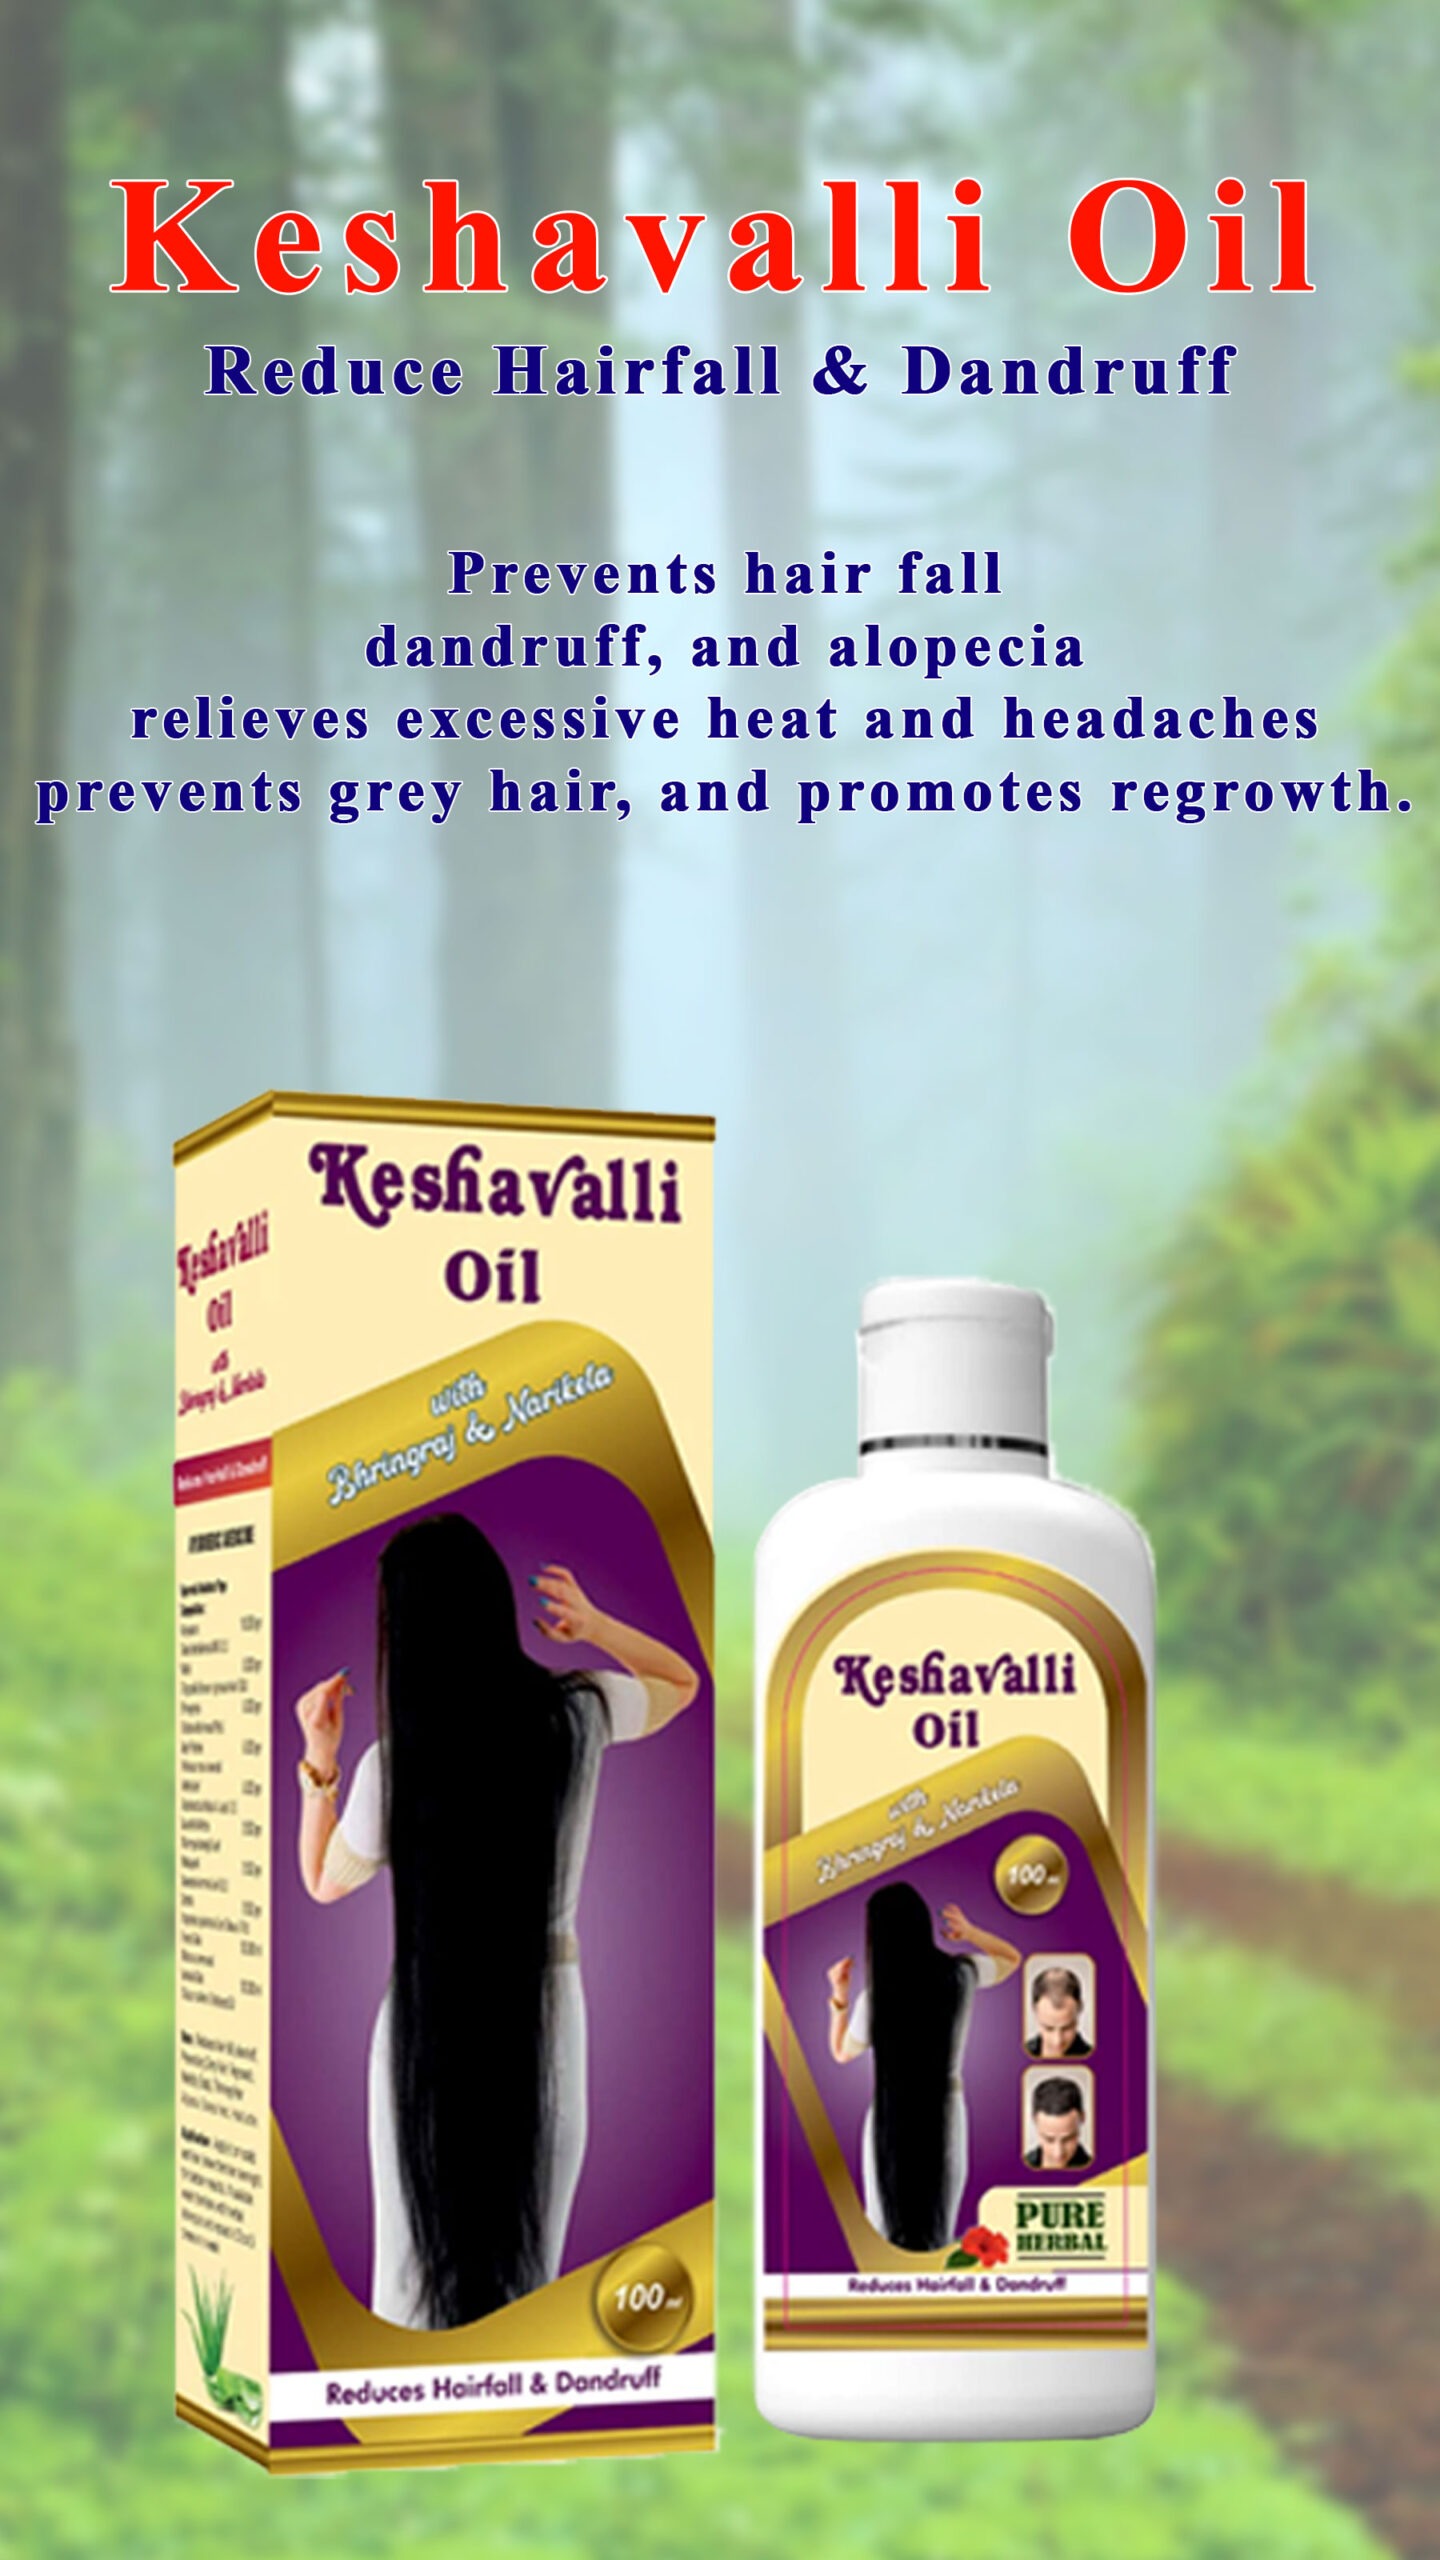 Keshavalli-oil